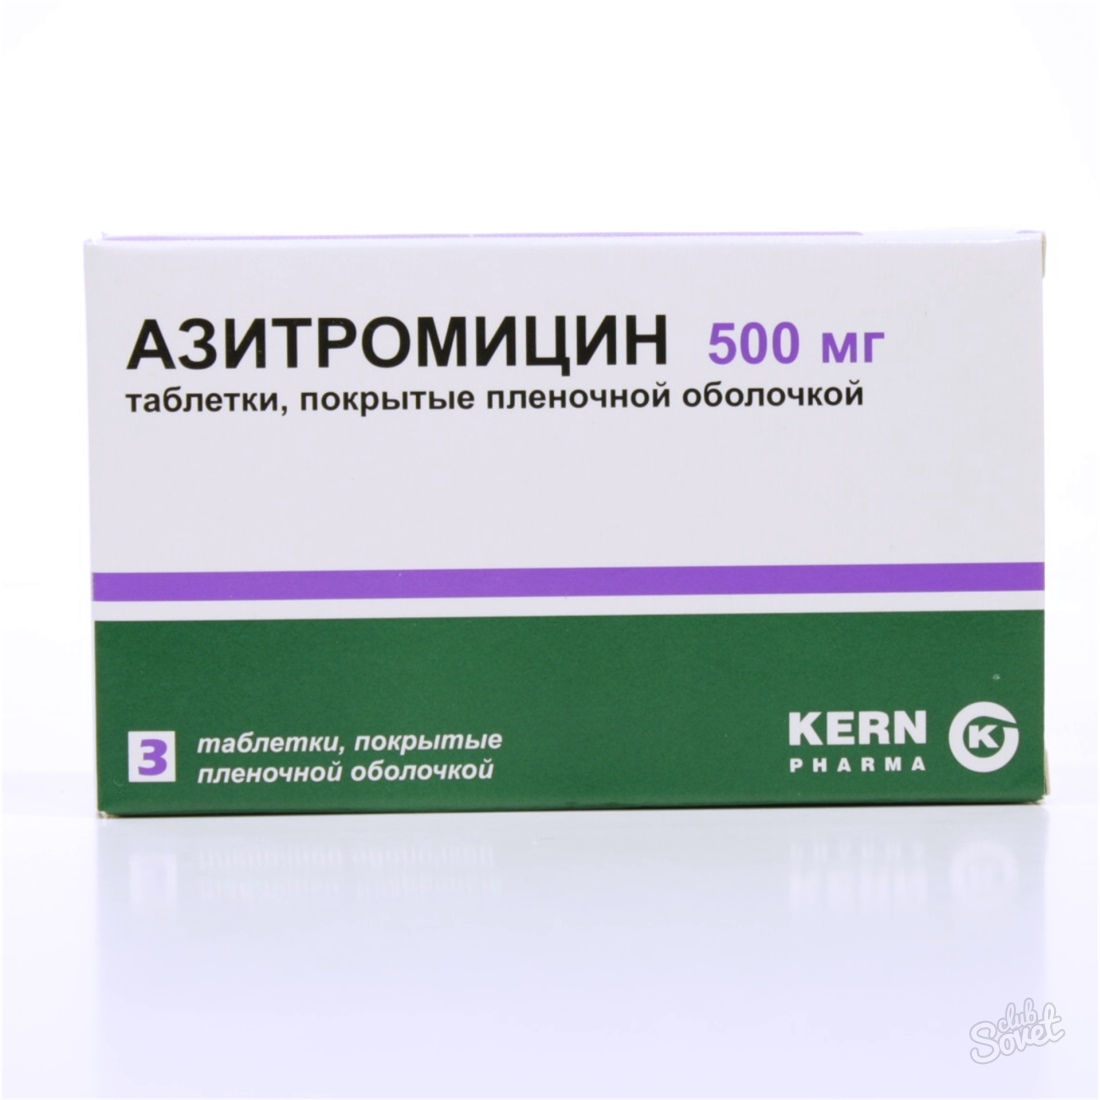 Azitromicină, instrucțiuni de utilizare